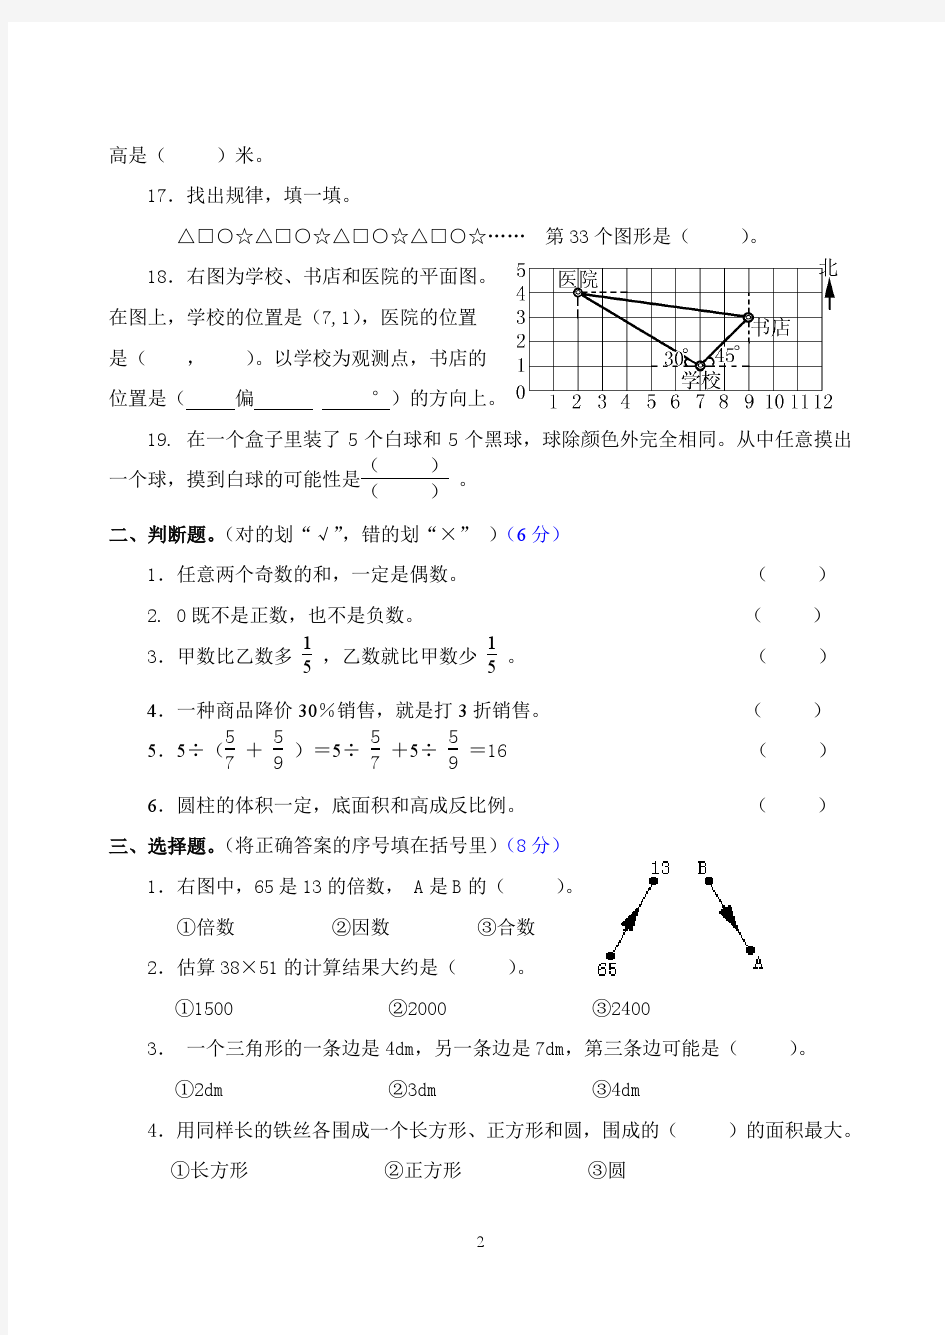 小河镇中心学校2014年数学六年级升学测试题(含答案)